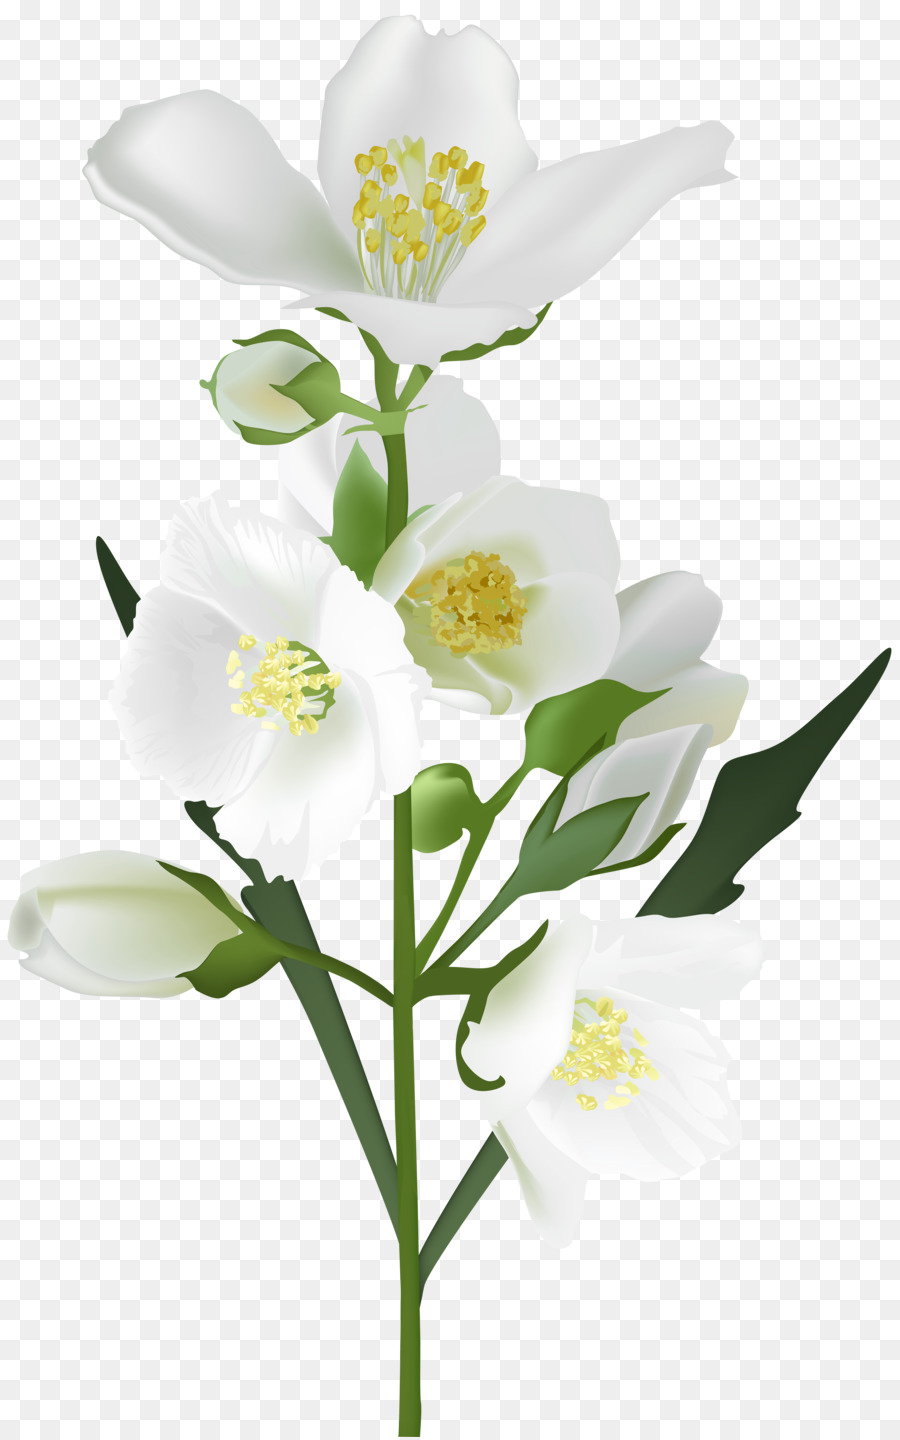 Flower White Clip art - jasmine flower png download - 5009*8000 - Free Transparent Flower png Download.